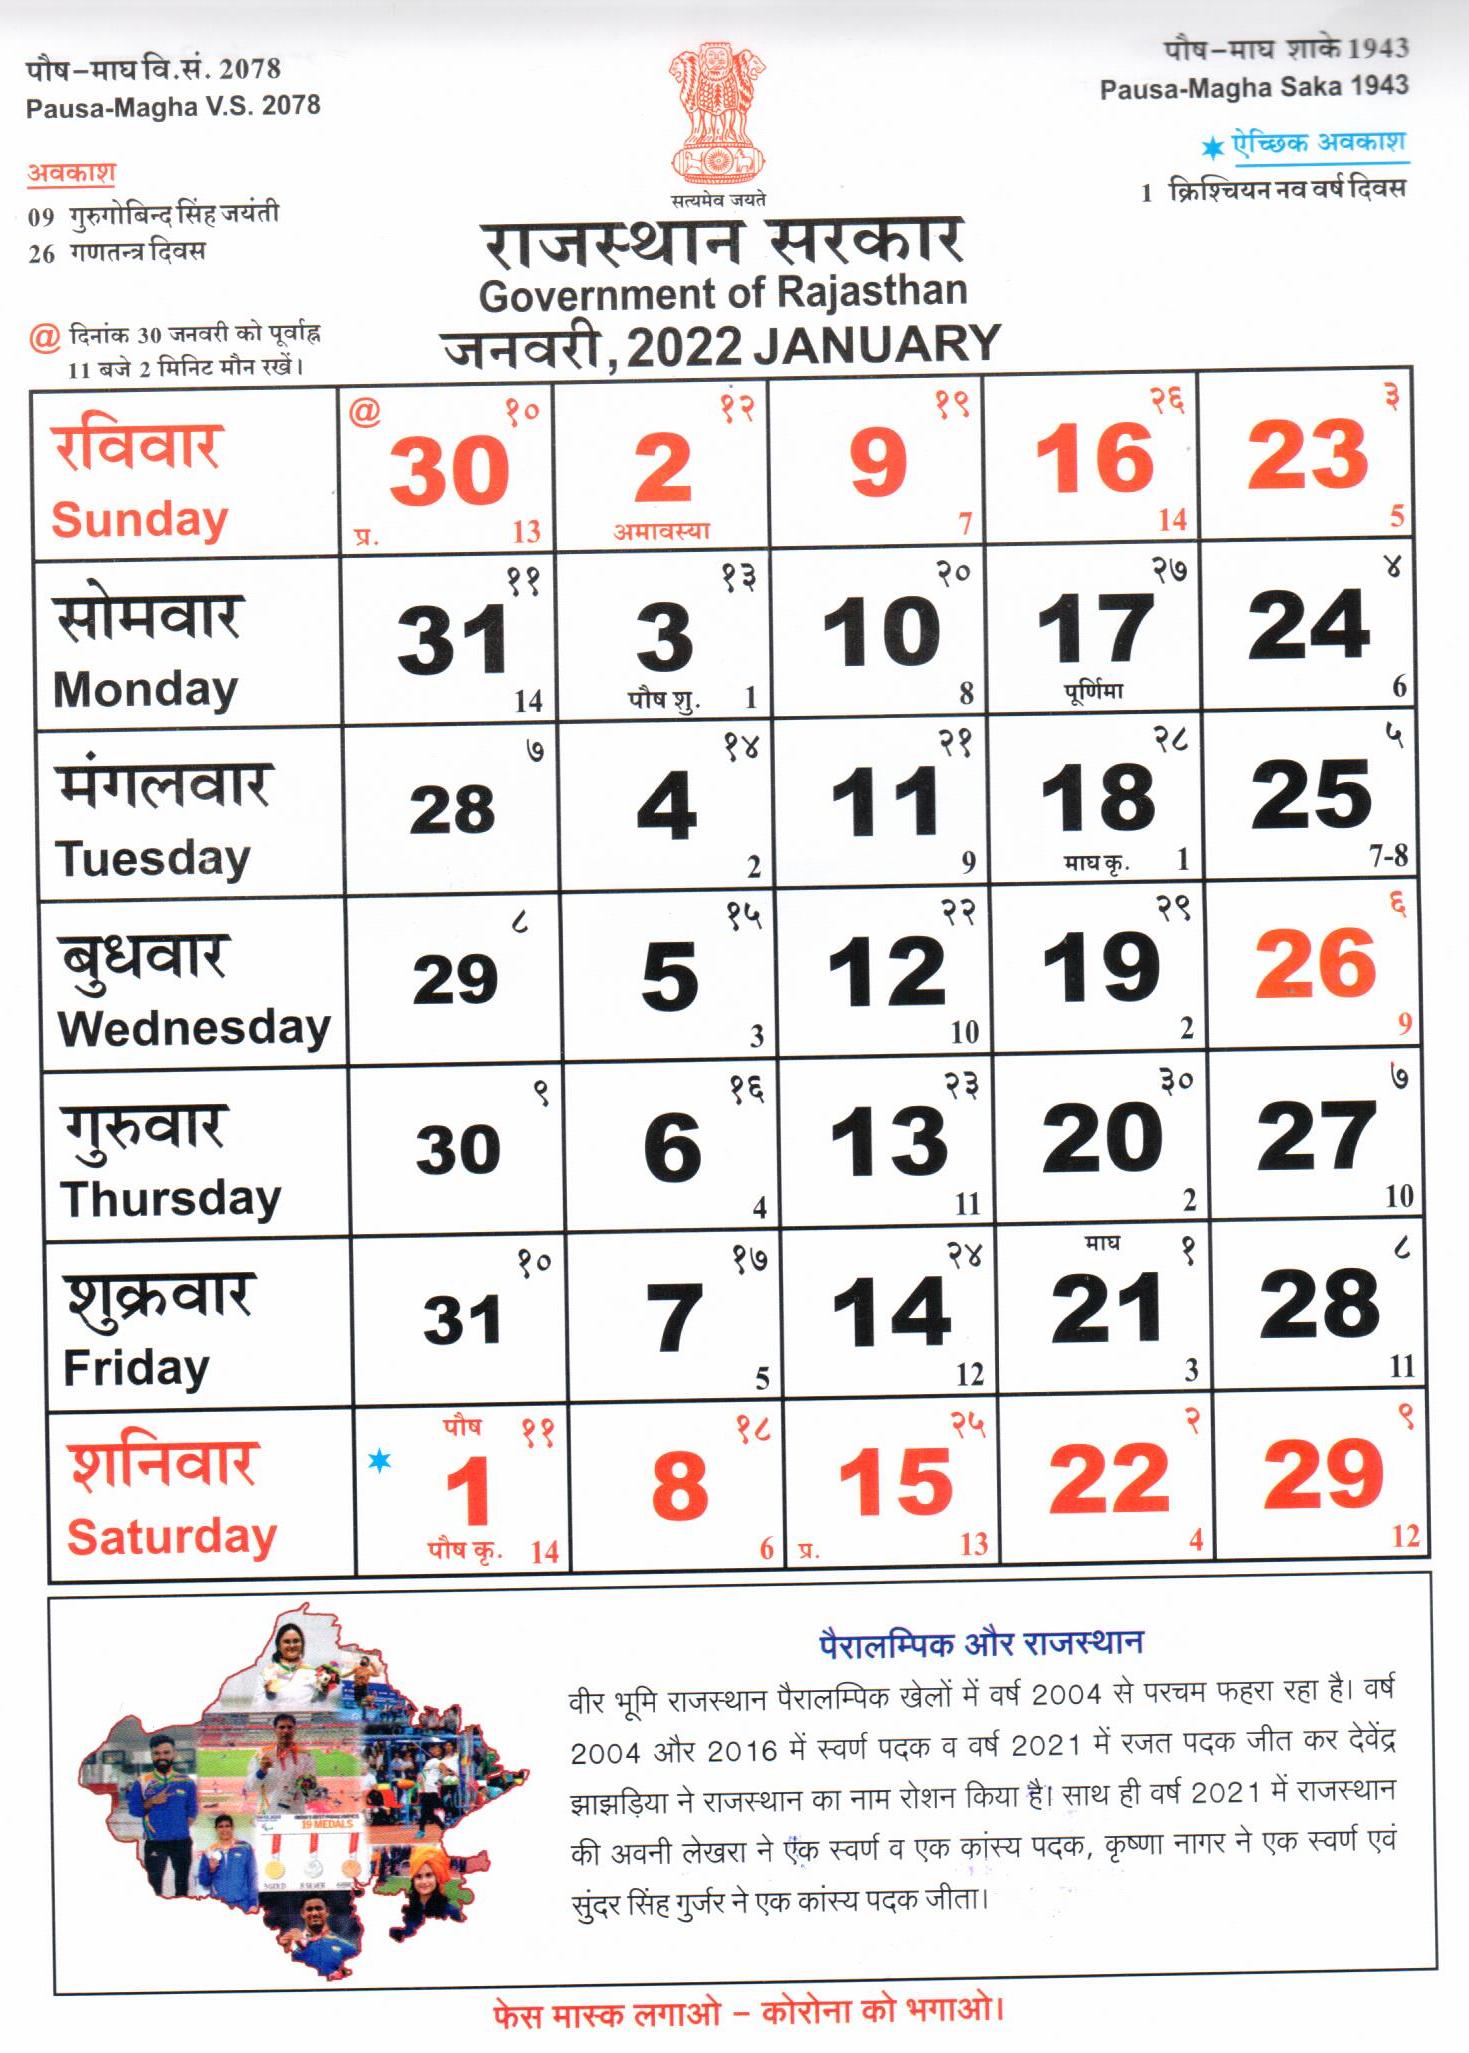 Rajasthan Govt official calendar 2022 download